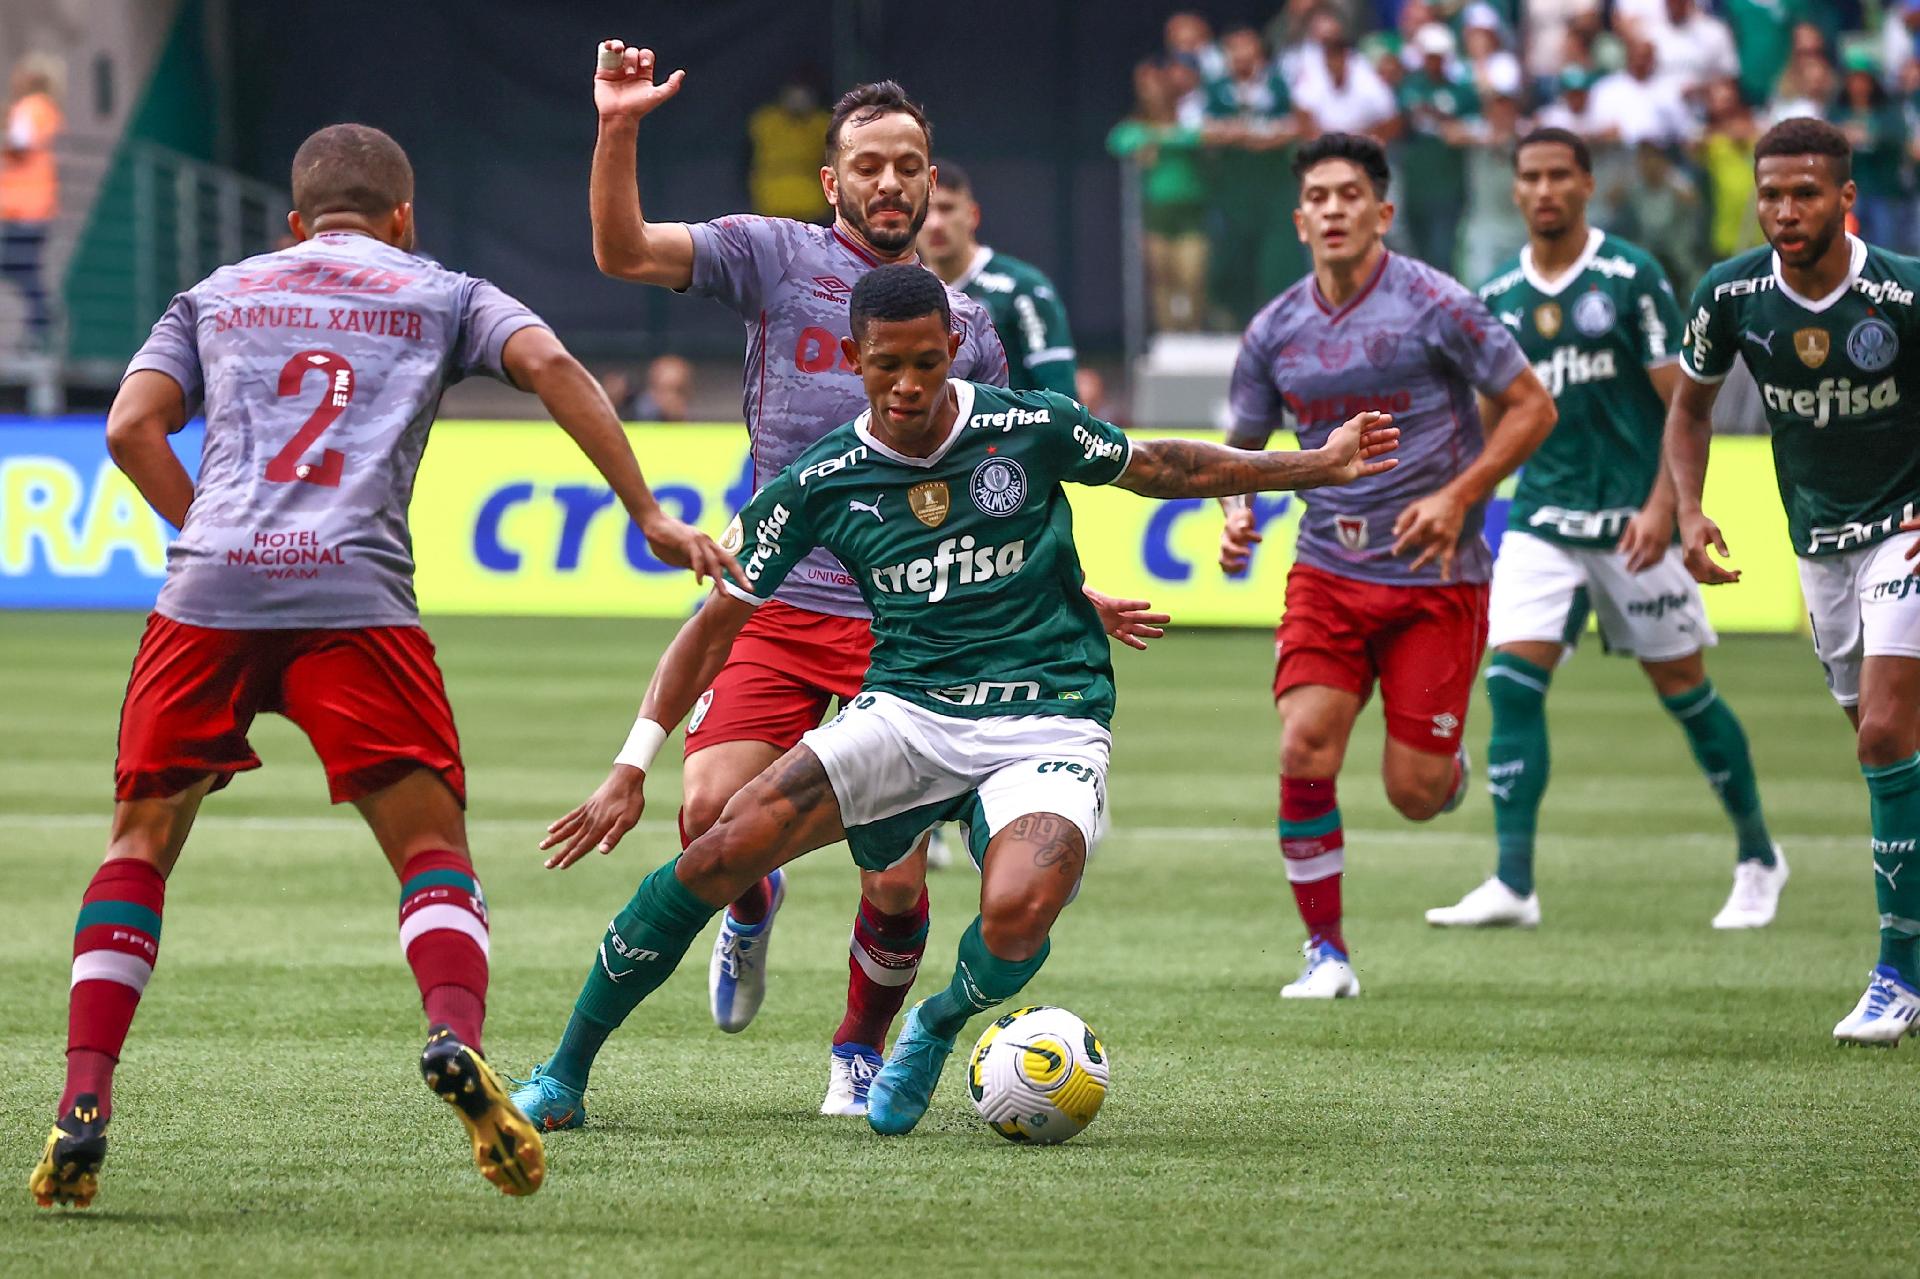 Palmeiras x Fluminense: onde assistir ao jogo pelo Brasileirão